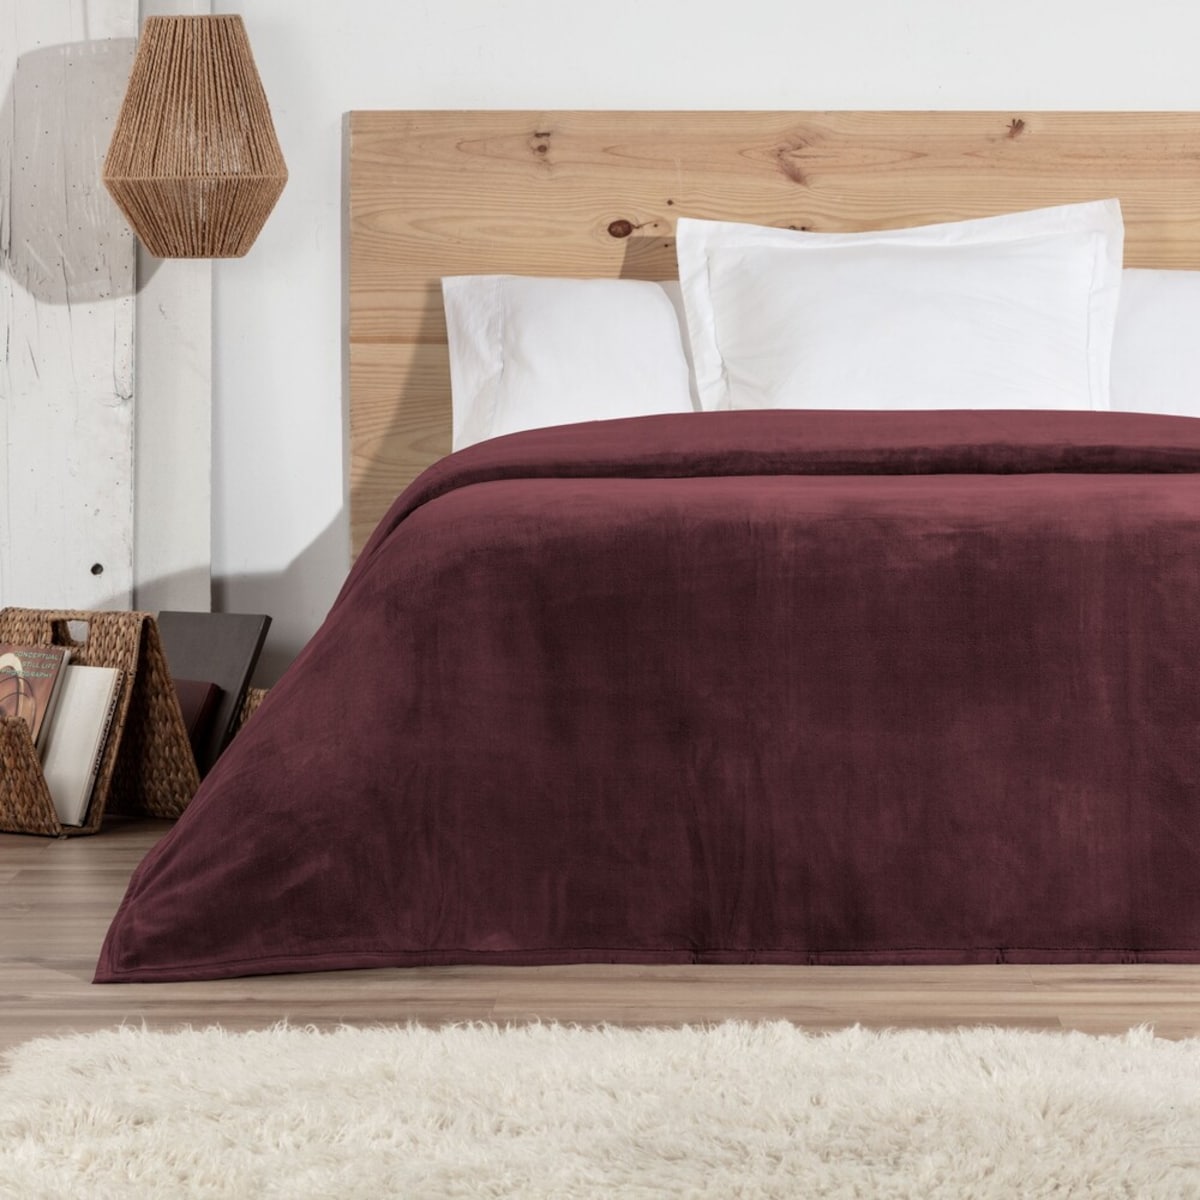 Мягкое простое одеяло для кровати Manterol, гранат плетеное одеяло ручной вязки с кисточками для кровати дивана дорожного дышащего шикарного богемного цвета мягкое удобное одеяло для офис